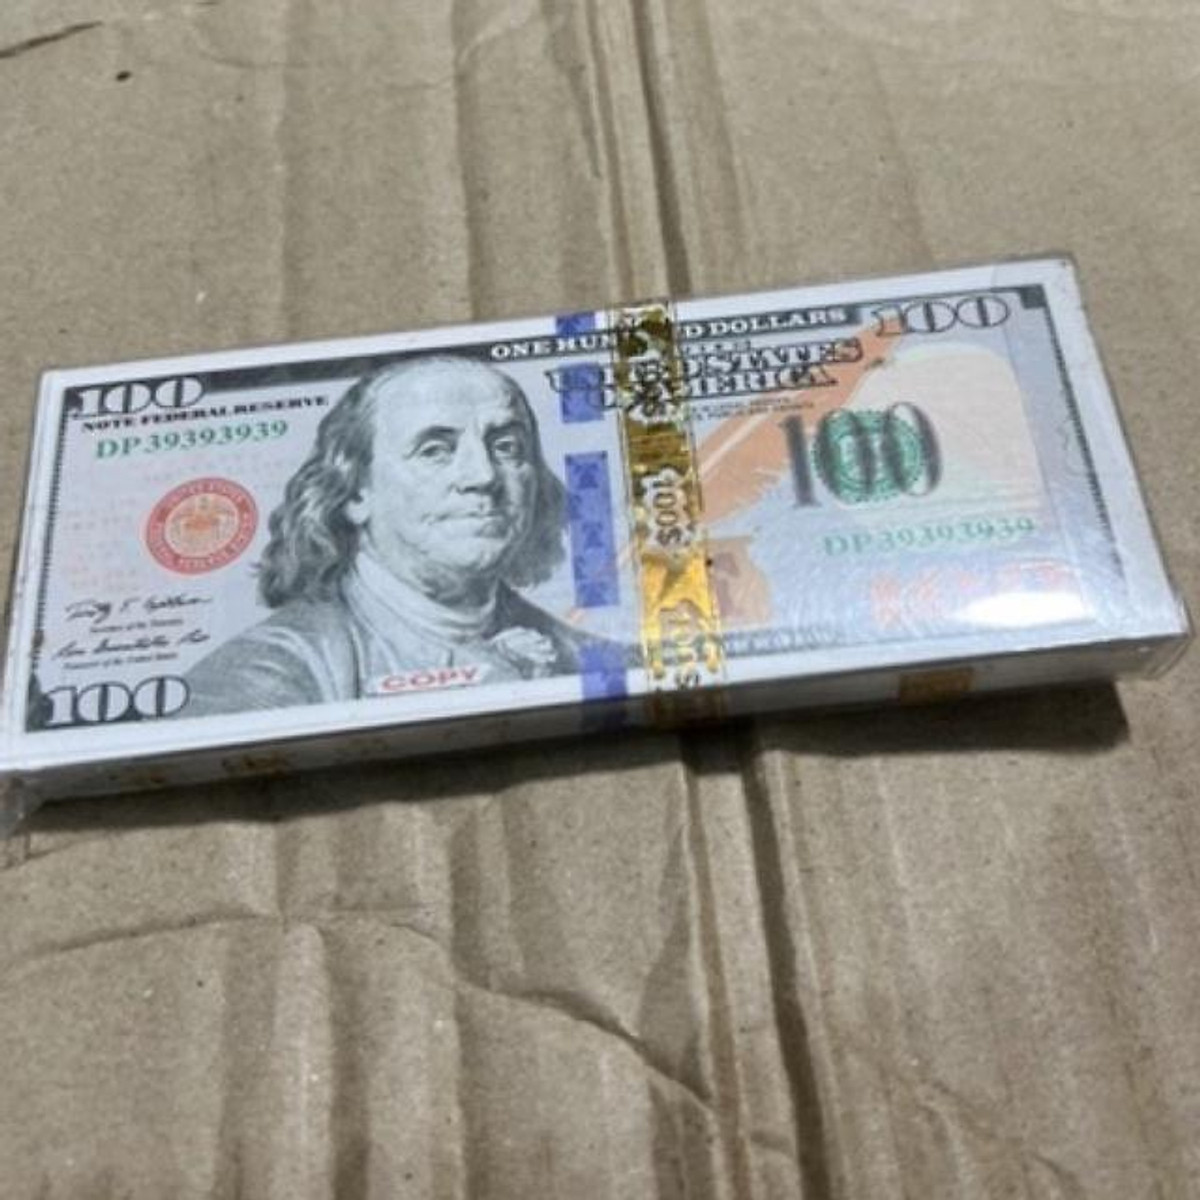 Một xấp đô la Mỹ giấy đẹp trong thờ cúng - Phụ kiện thờ cúng